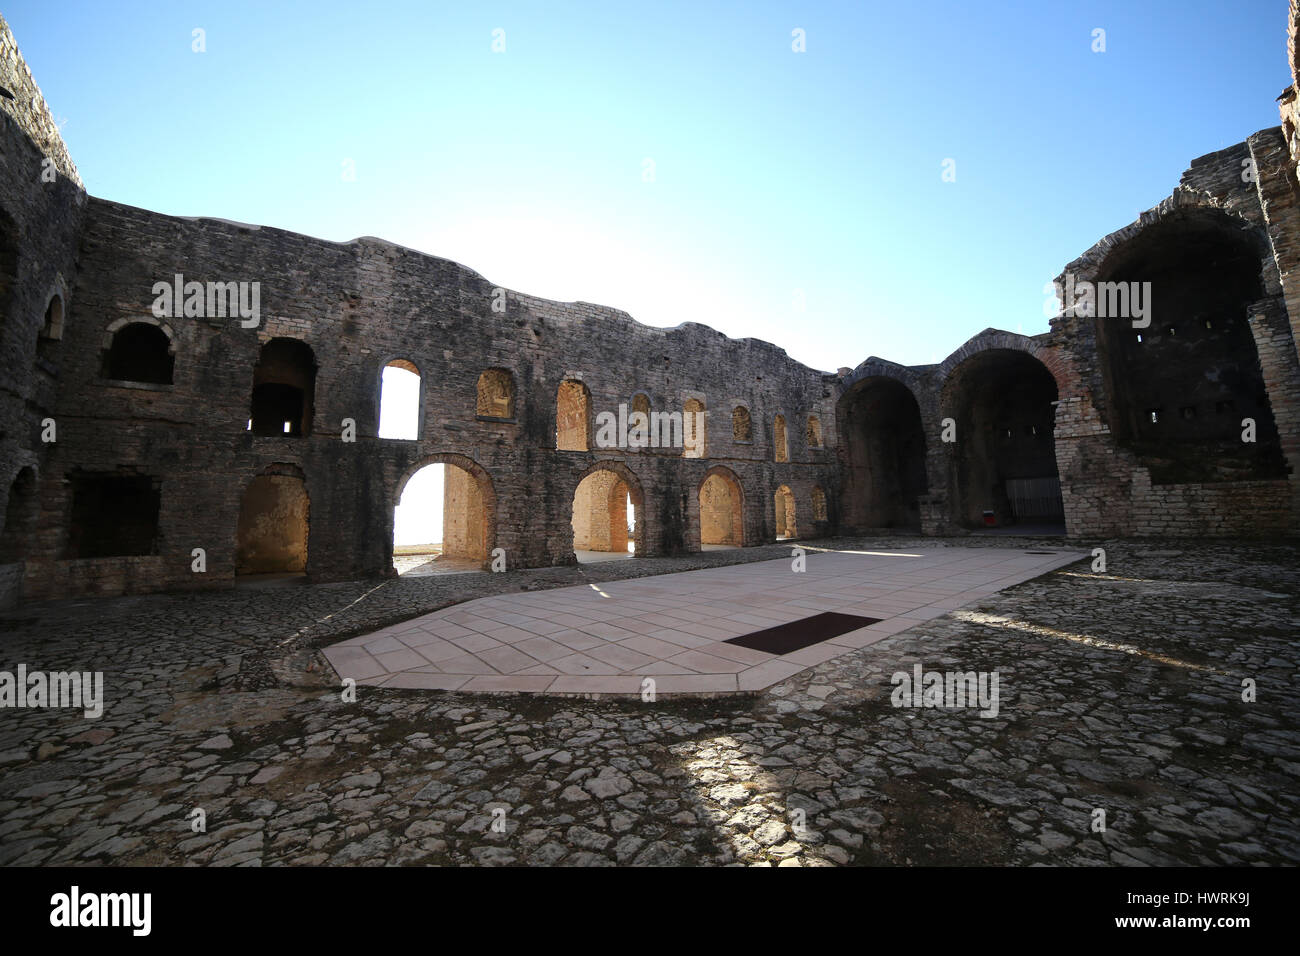 Cortile interno di un antico fortilizio della I Guerra Mondiale chiamato Forte Interrotto vicino a Asiago città nel Nord Italia Foto Stock